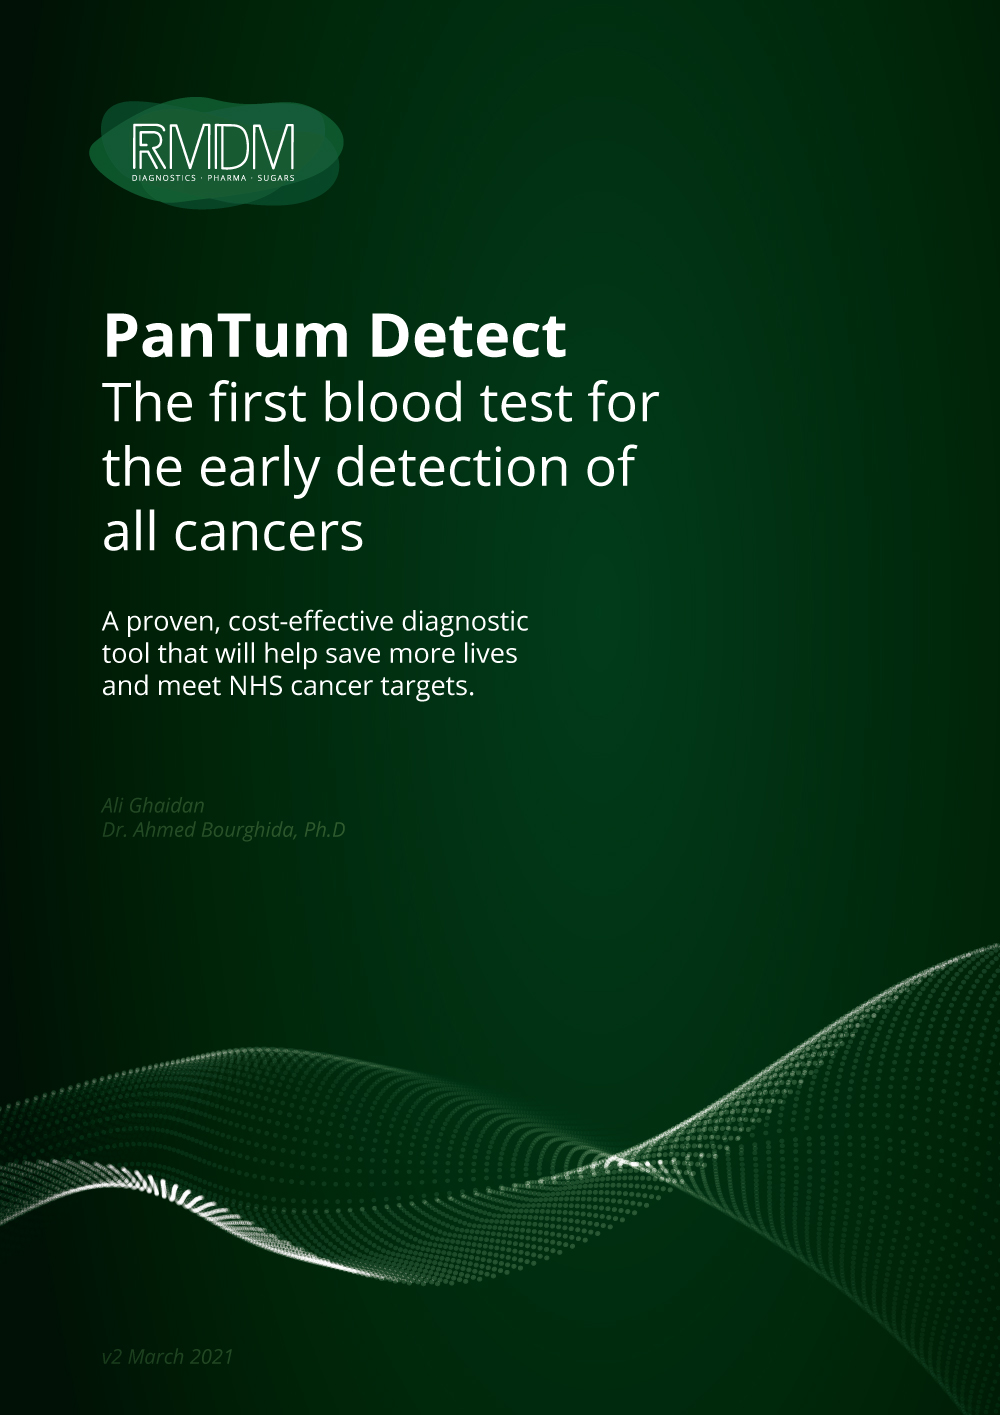 RMDM PanTum Detect Whitepaper